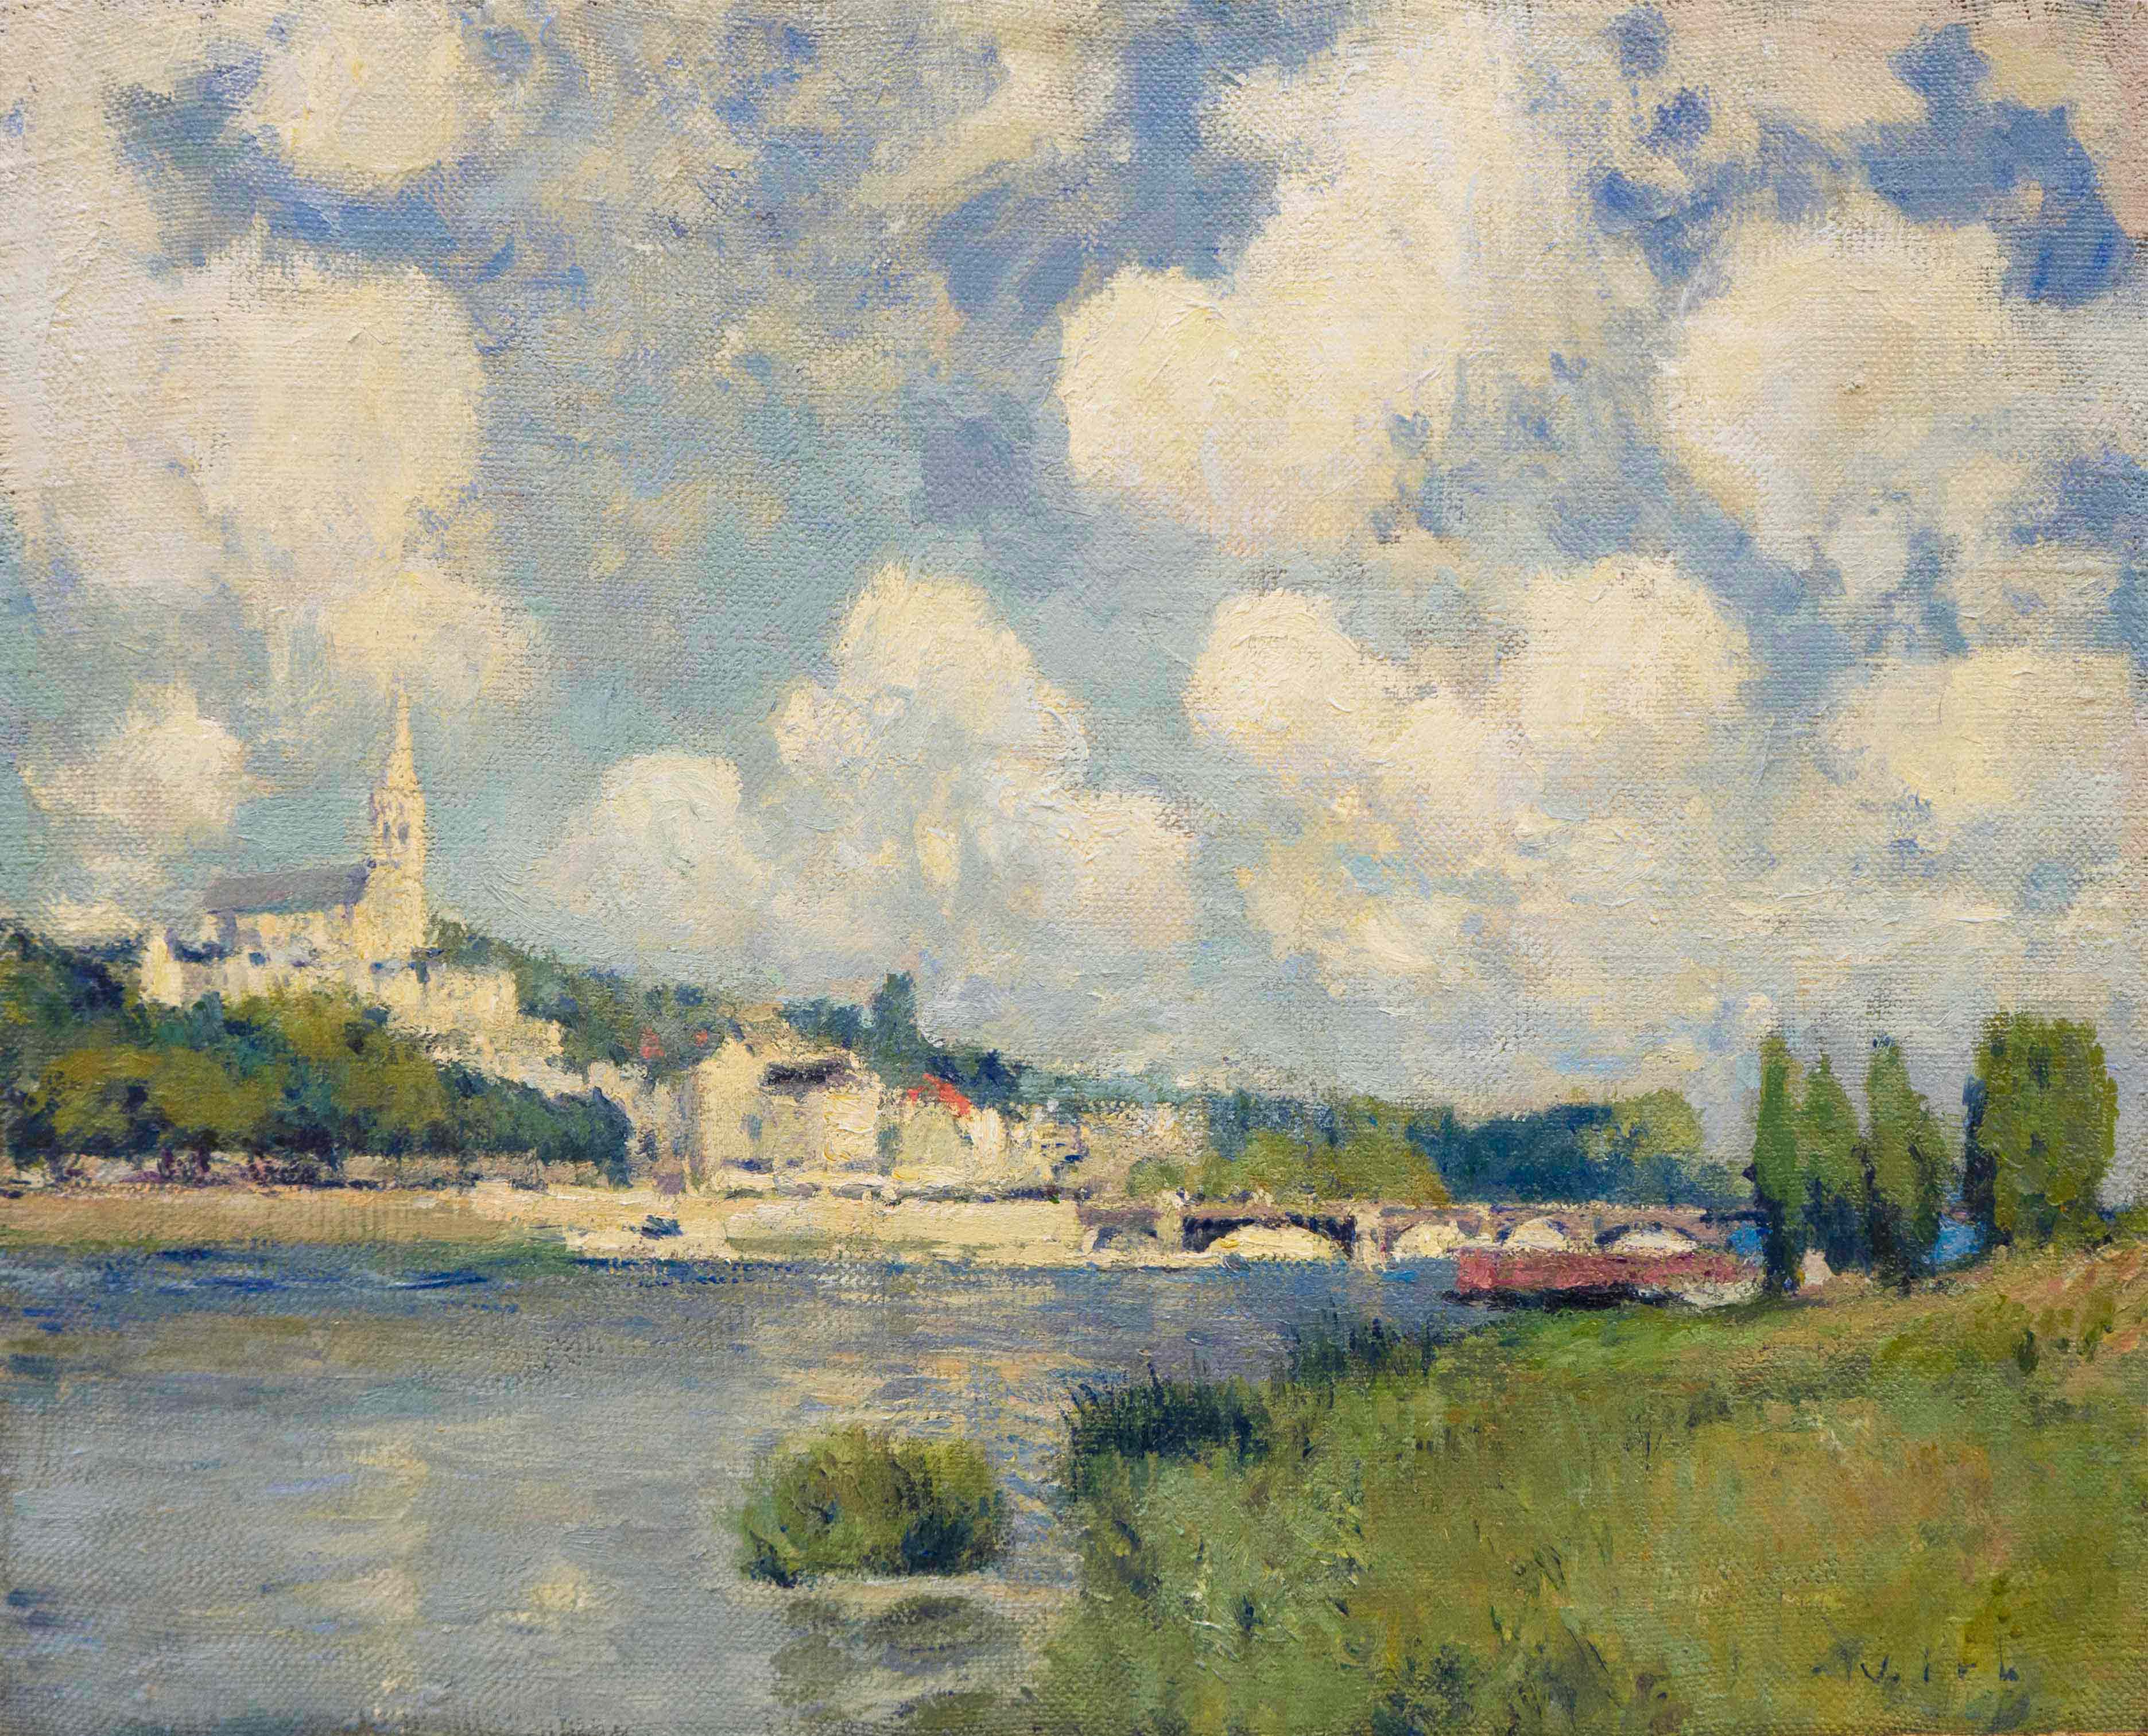 The River at Saint Cloud - 1, Vladimir Kirillov, Buy the painting Oil